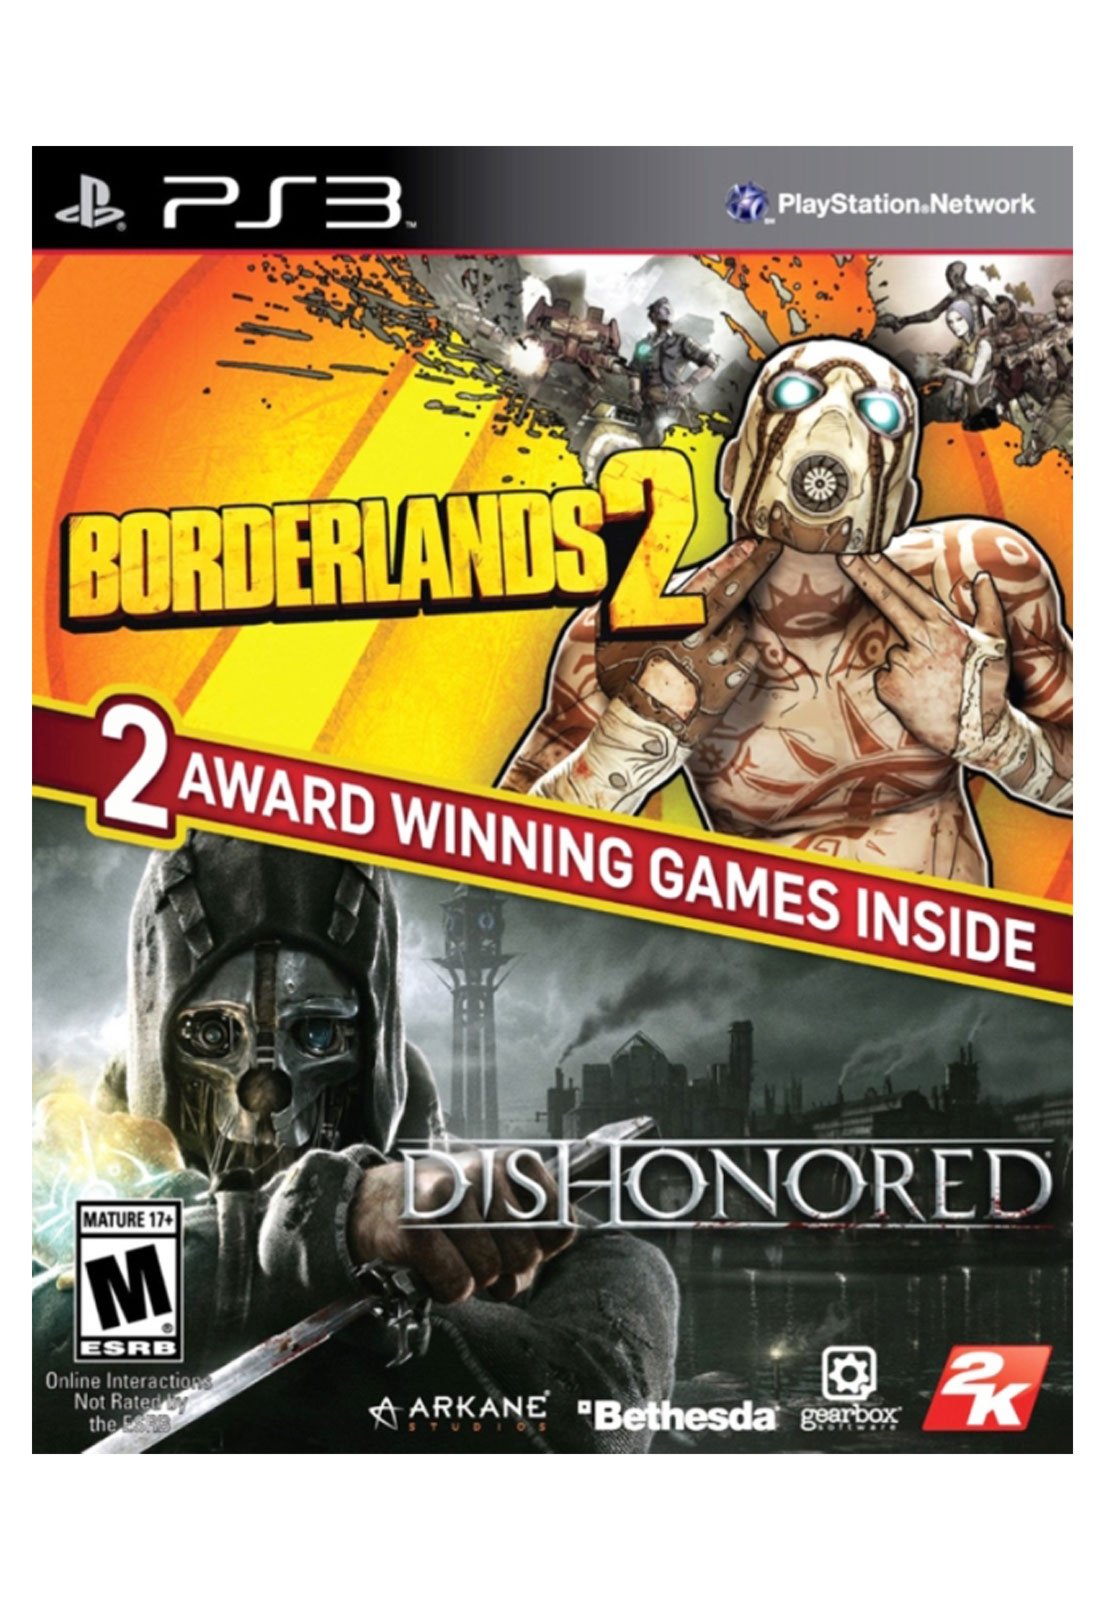 Jogo Borderlands 2 Original Lacrado Para Ps3 Playstation 3 em